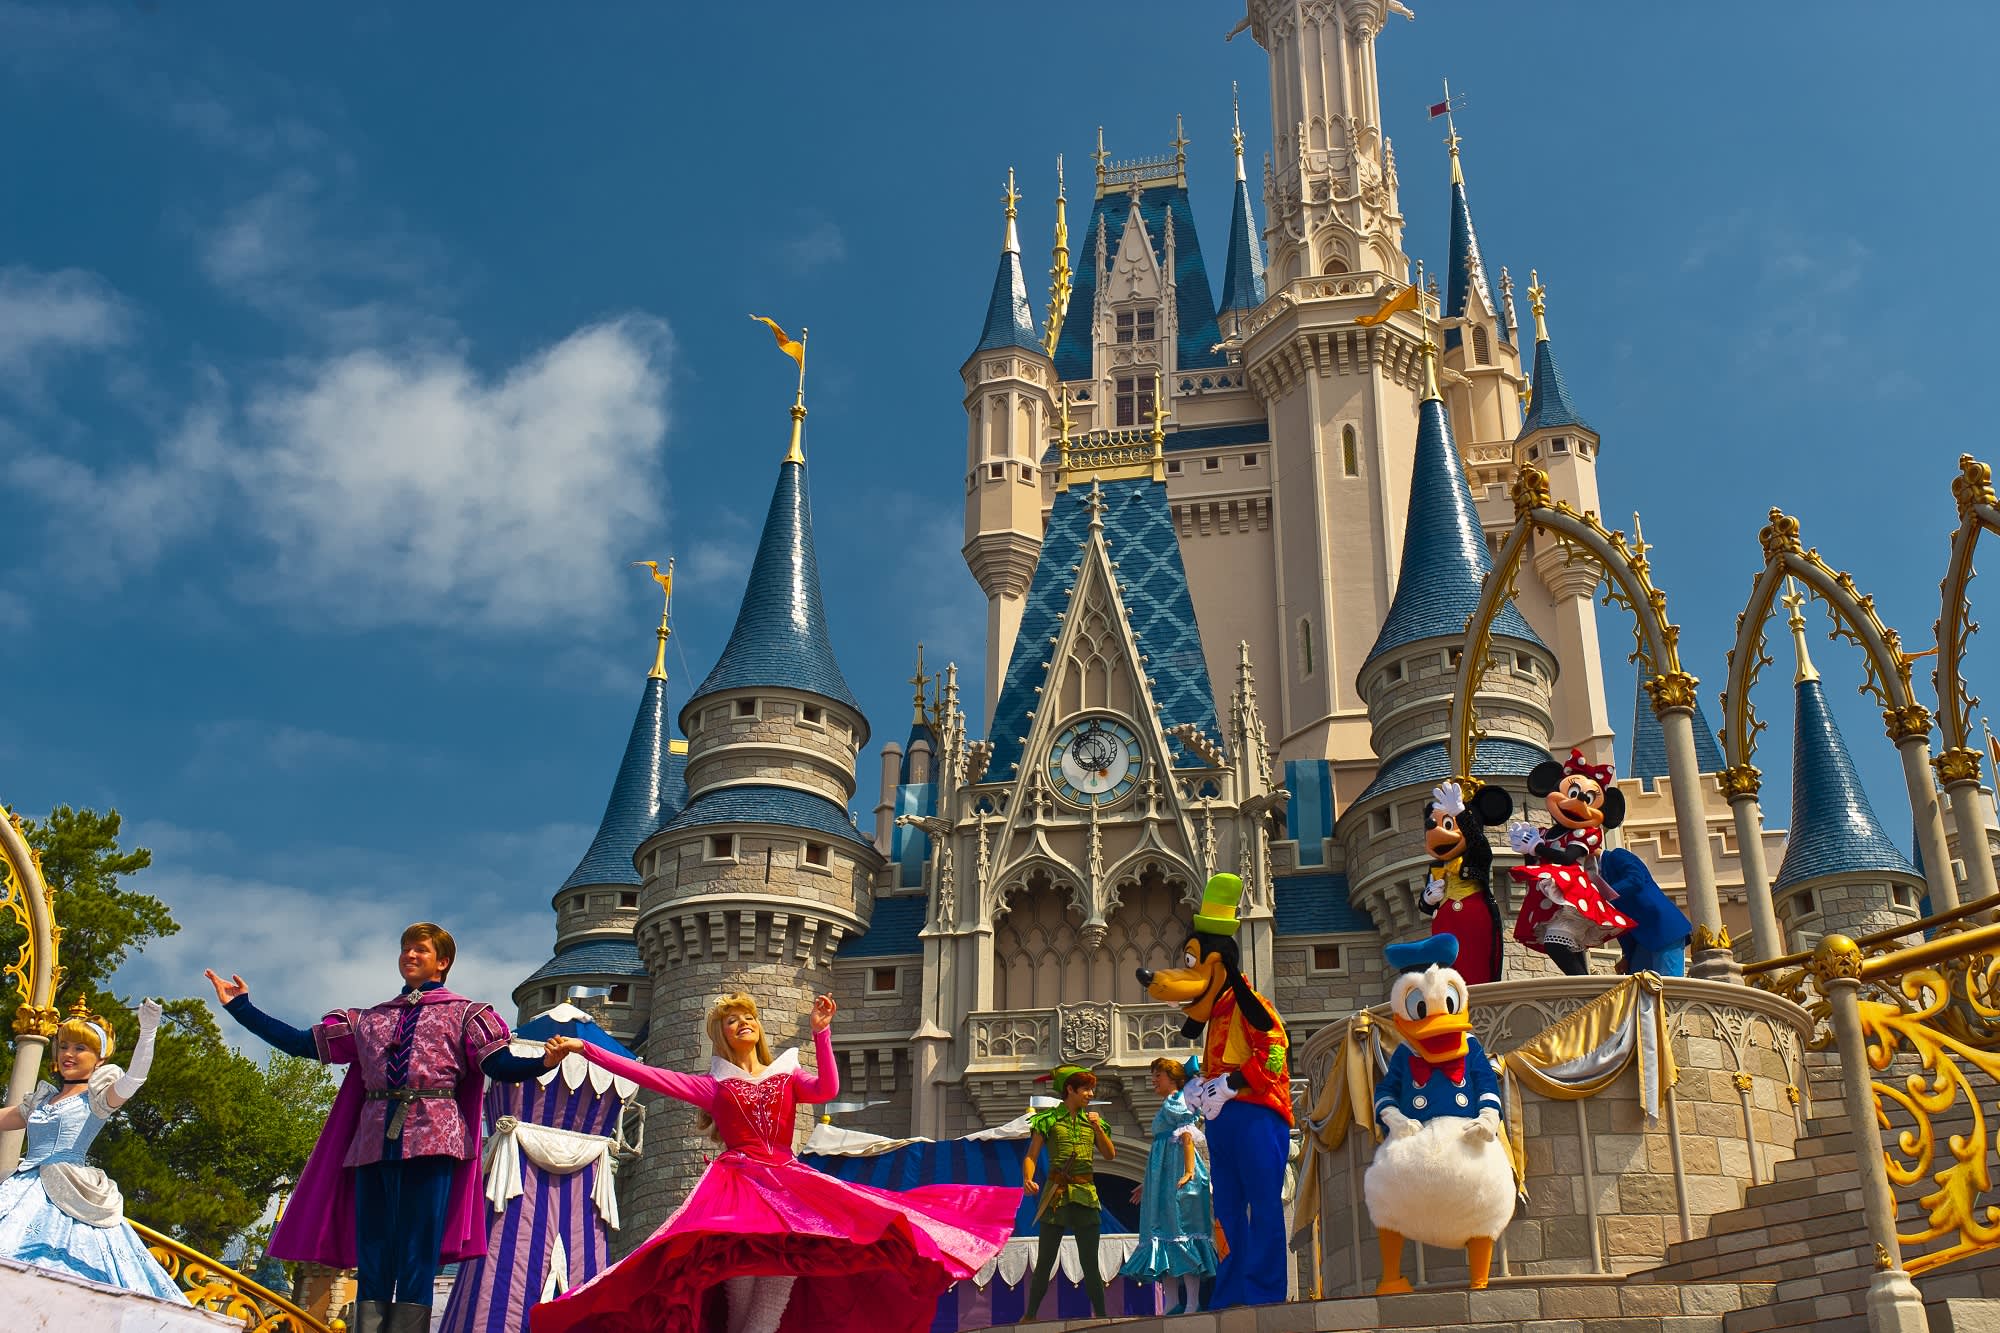 5 Disneyland Castles in the world you should visit